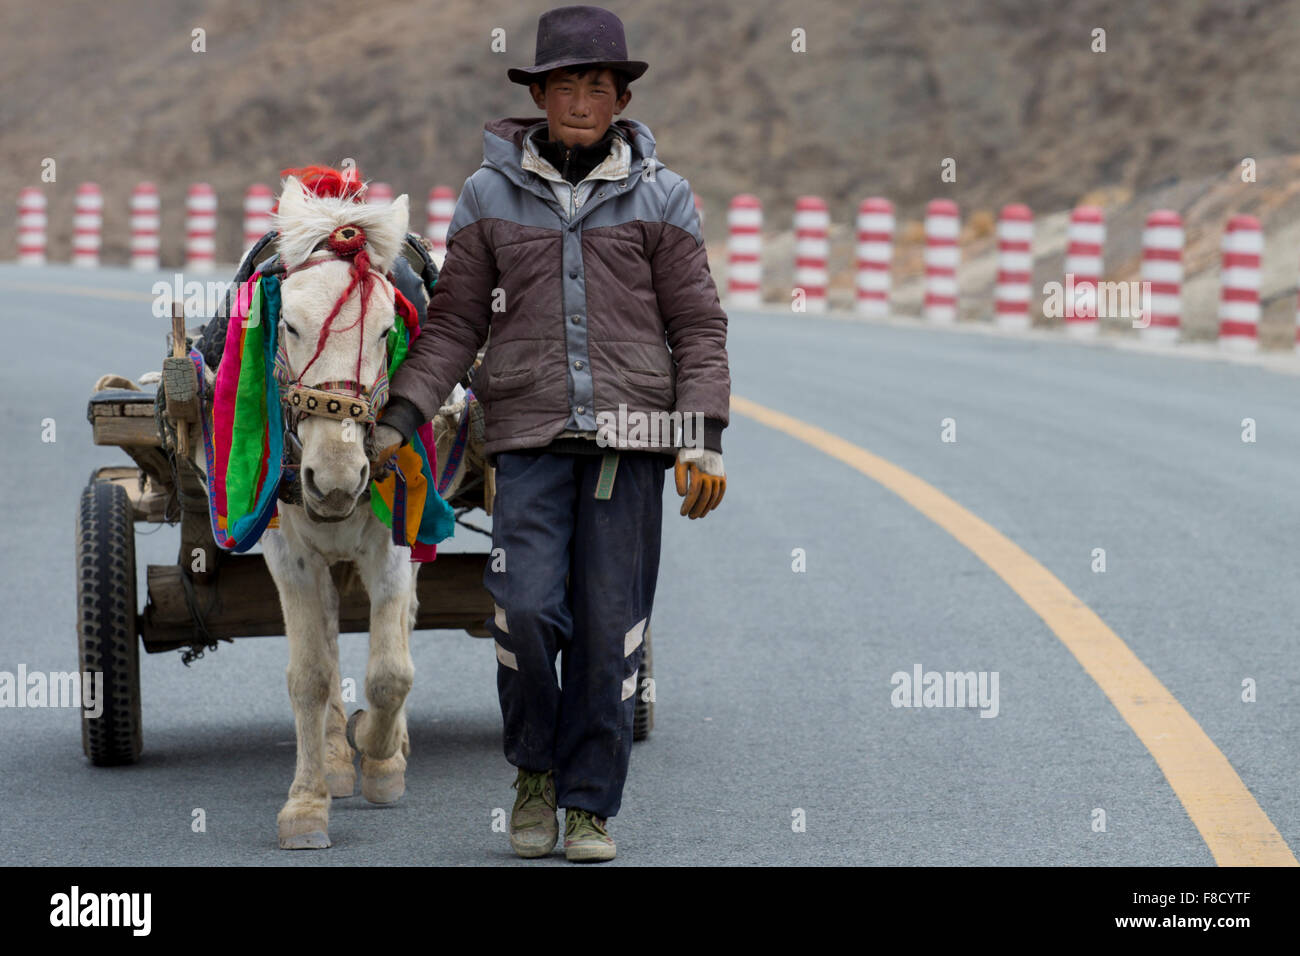 Un jeune adulte agriculteur avec son cheval sur la route de marche Banque D'Images